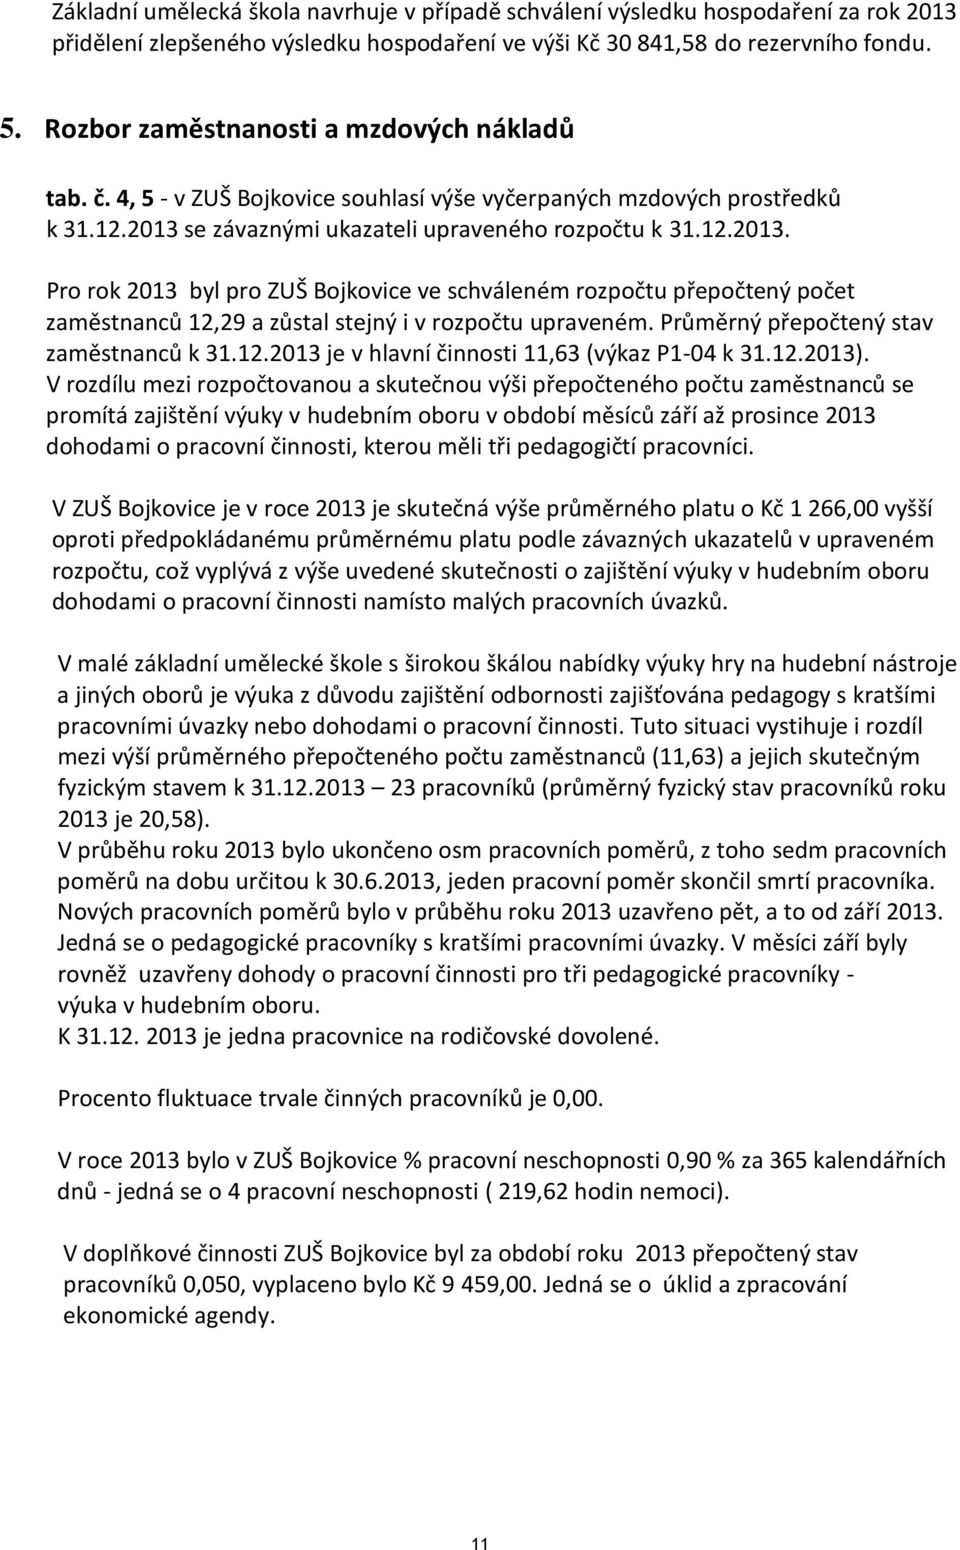 se závaznými ukazateli upraveného rozpočtu k 31.12.2013. Pro rok 2013 byl pro ZUŠ Bojkovice ve schváleném rozpočtu přepočtený počet zaměstnanců 12,29 a zůstal stejný i v rozpočtu upraveném.